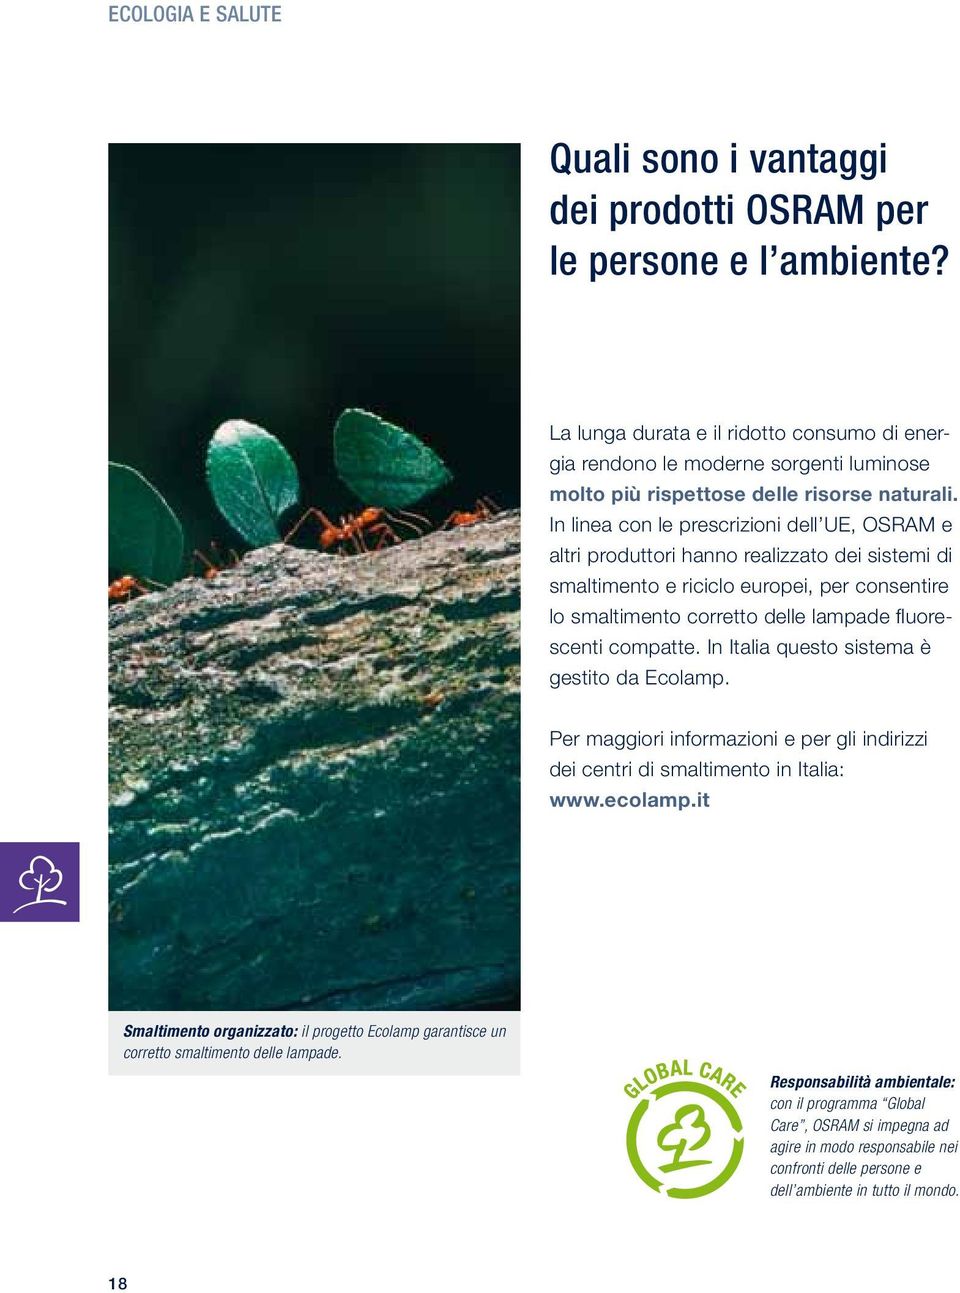 In linea con le prescrizioni dell UE, OSRAM e altri produttori hanno realizzato dei sistemi di smaltimento e riciclo europei, per consentire lo smaltimento corretto delle lampade fluorescenti